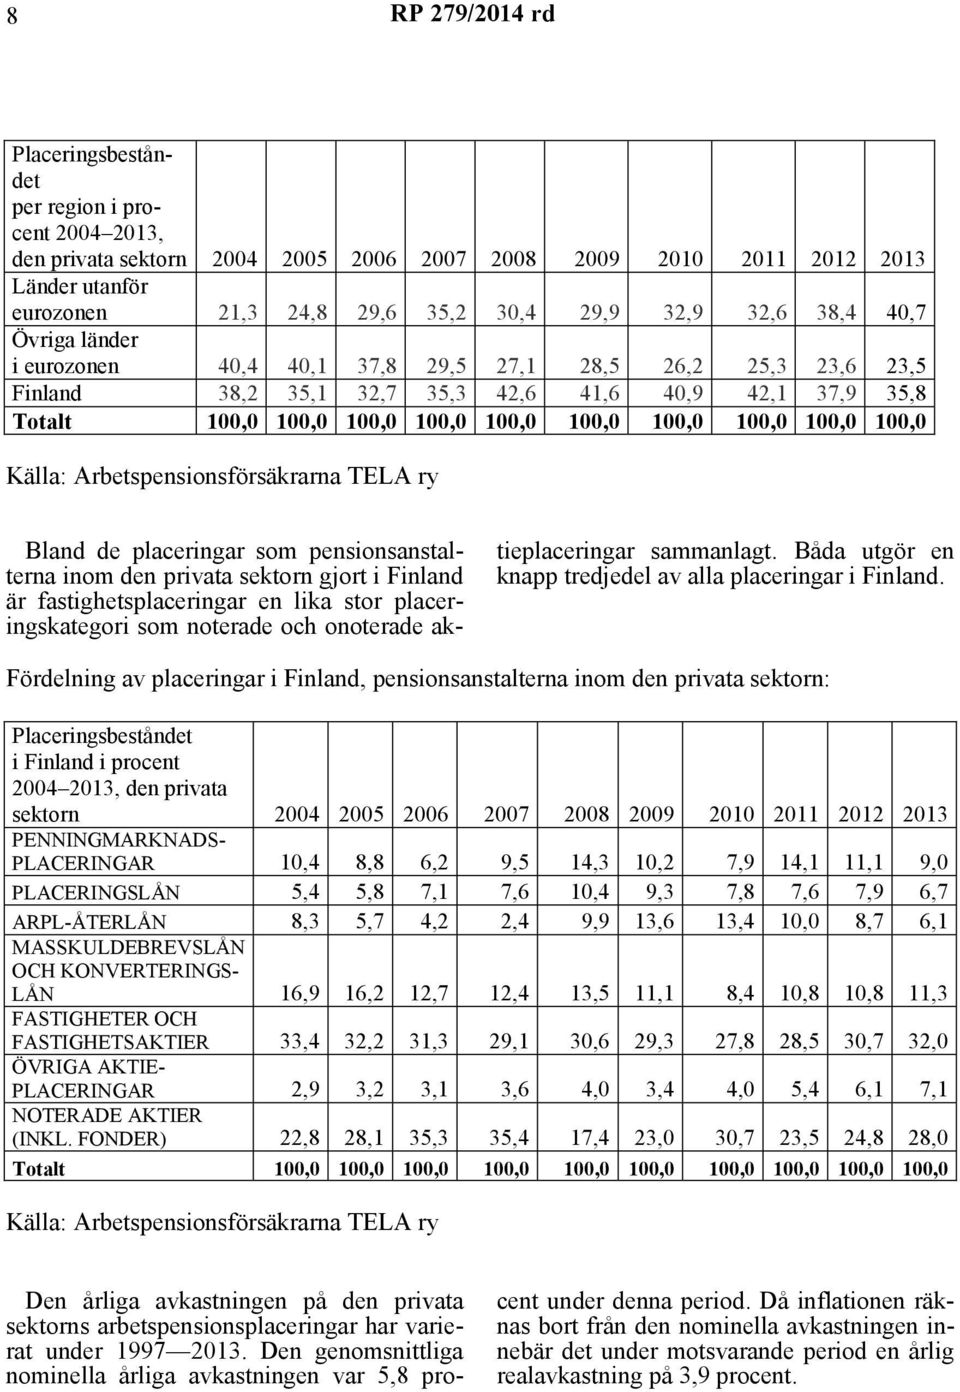 100,0 Källa: Arbetspensionsförsäkrarna TELA ry Bland de placeringar som pensionsanstalterna inom den privata sektorn gjort i Finland är fastighetsplaceringar en lika stor placeringskategori som